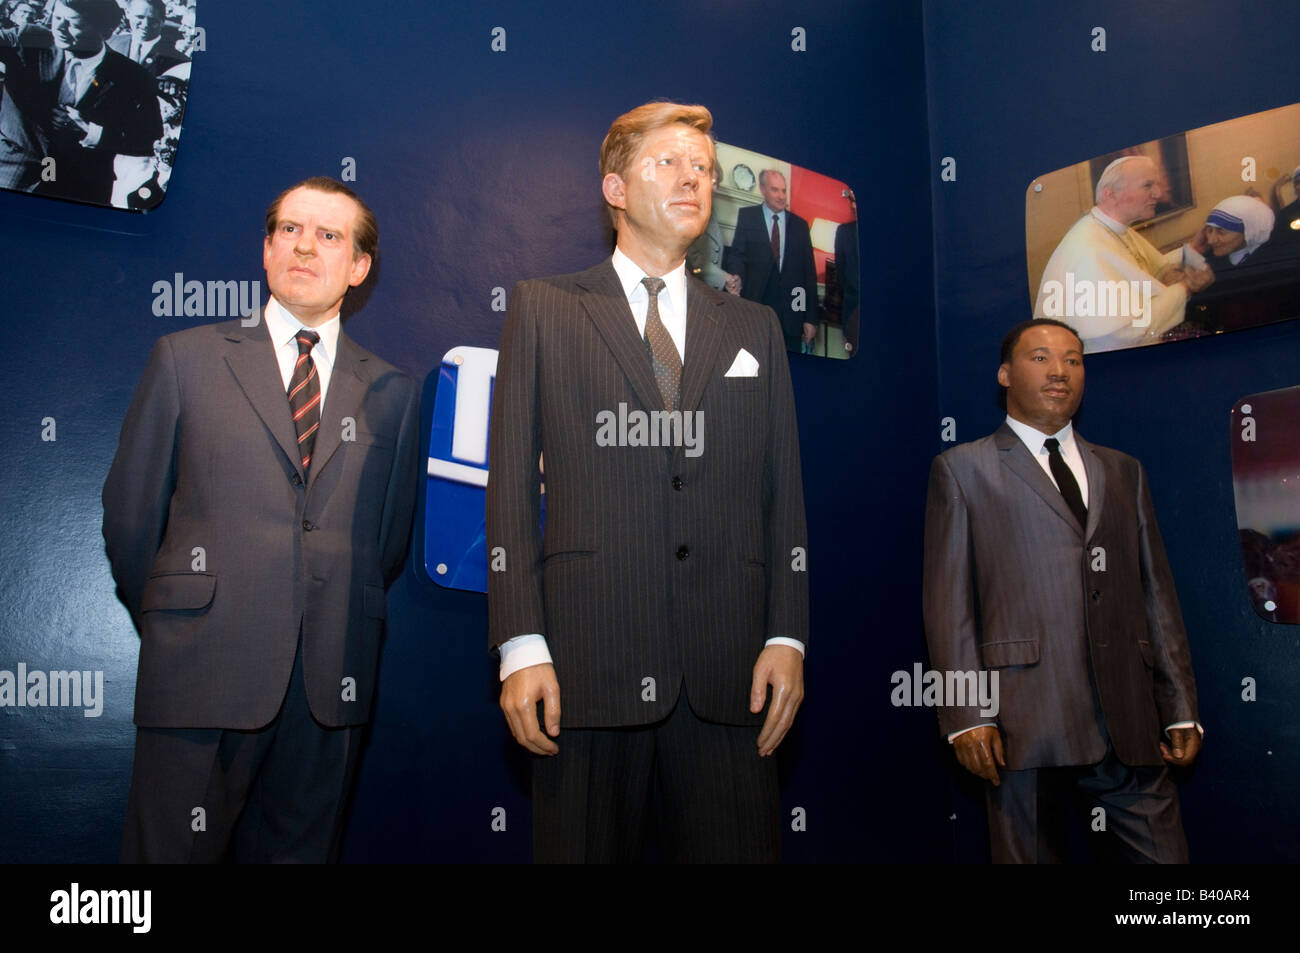 Waxwork Modelle von Richard Nixon John F Kennedy und Martin Luther King Jr bei Madame Tussauds, London, UK Stockfoto